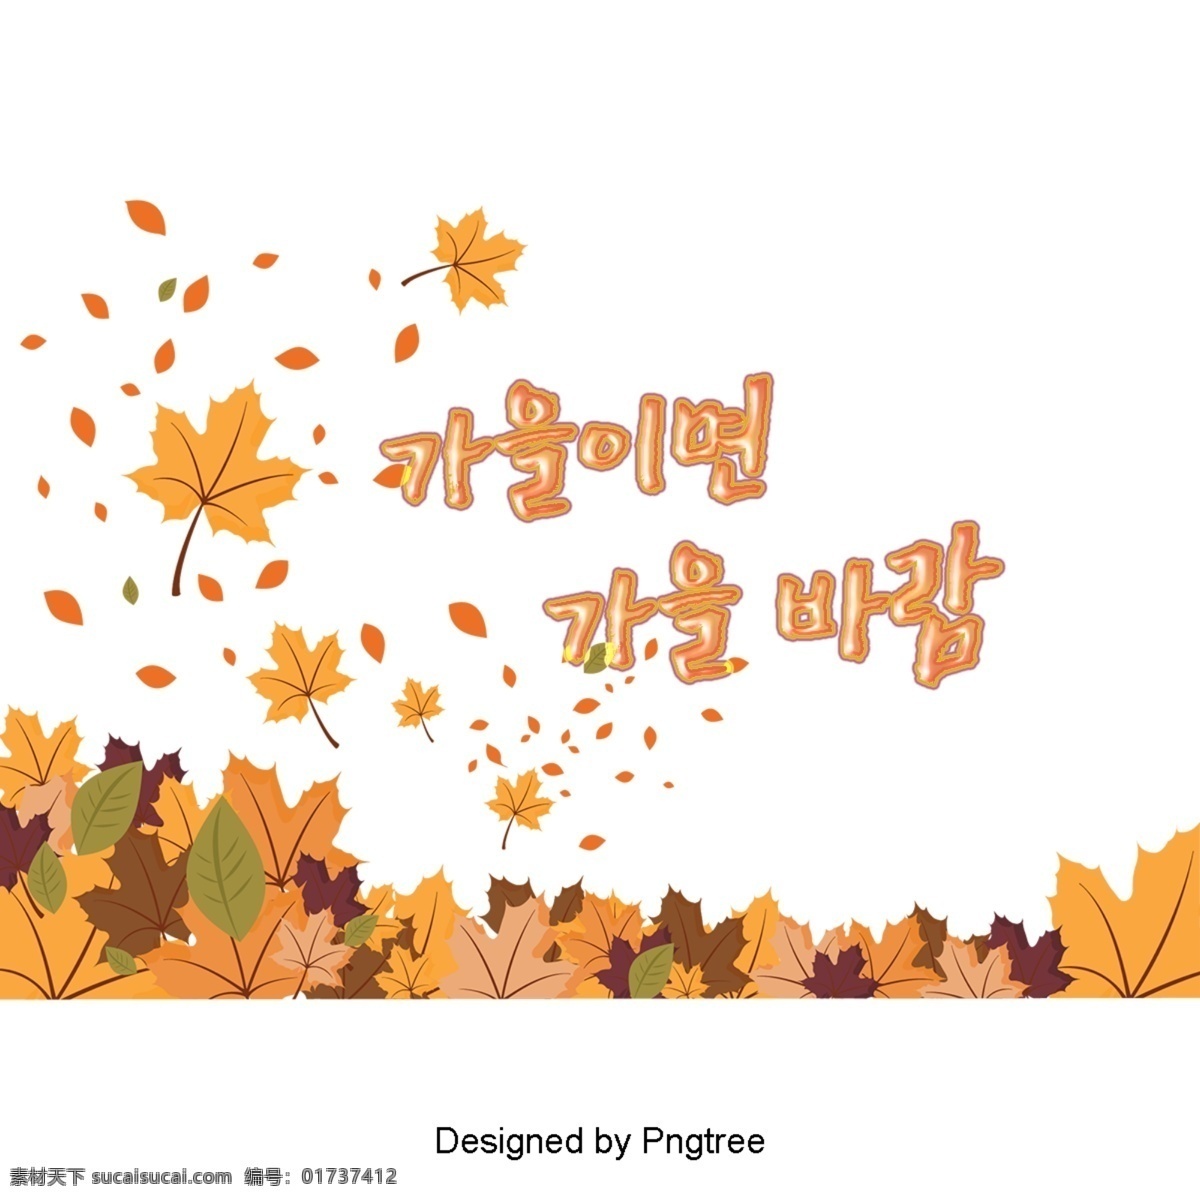 秋天 秋 风吹 黄 秋叶 美丽 字体 秋季 秋风 季节 落叶 黄色 凄凉的秋天 可爱 字形